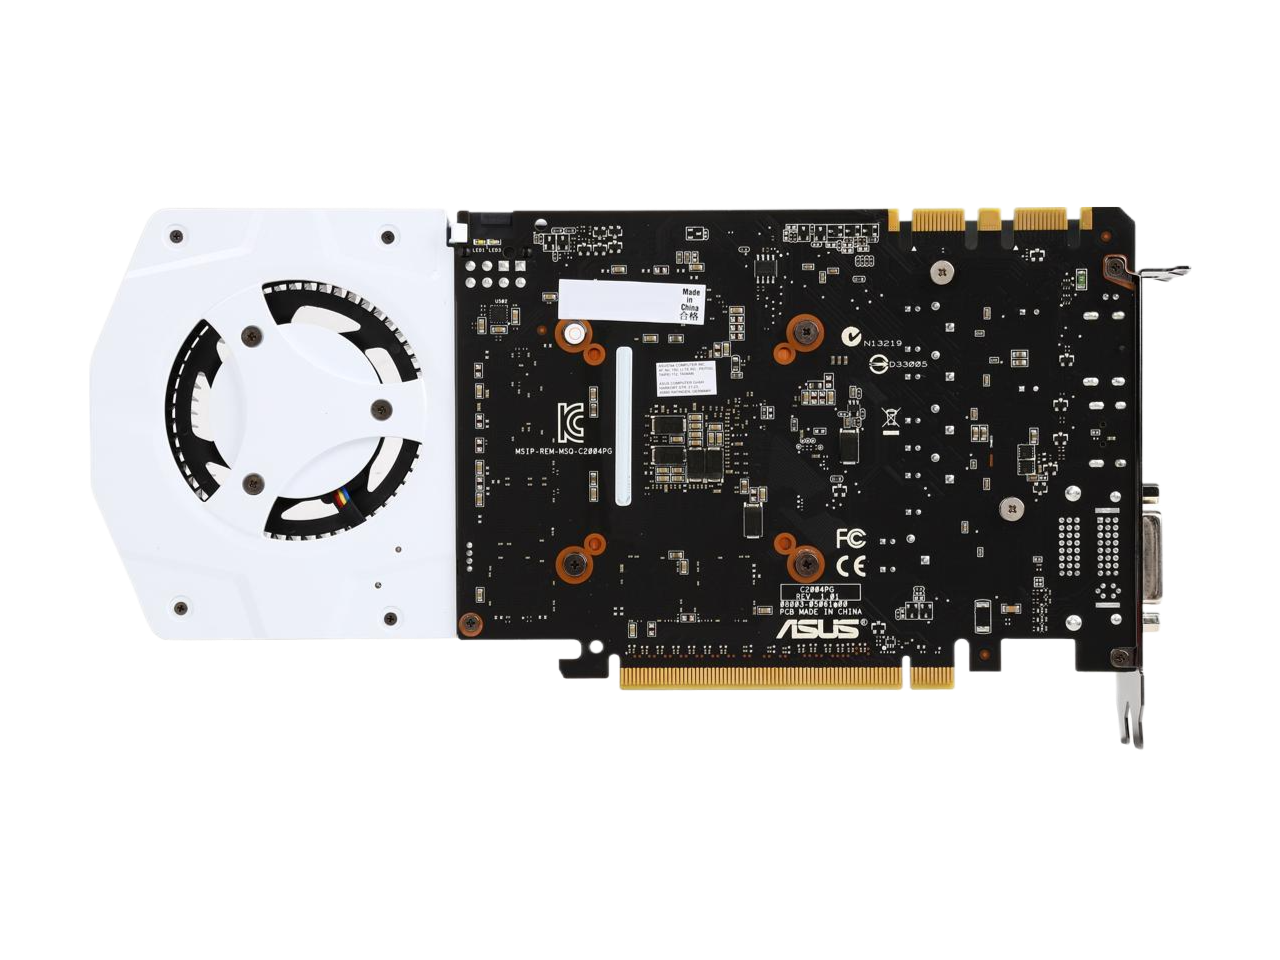 ASUS GeForce GTX 970 4GB GDDR5 PCI Express 3.0 SLI Support Video Card TURBO-GTX970-OC-4GD5